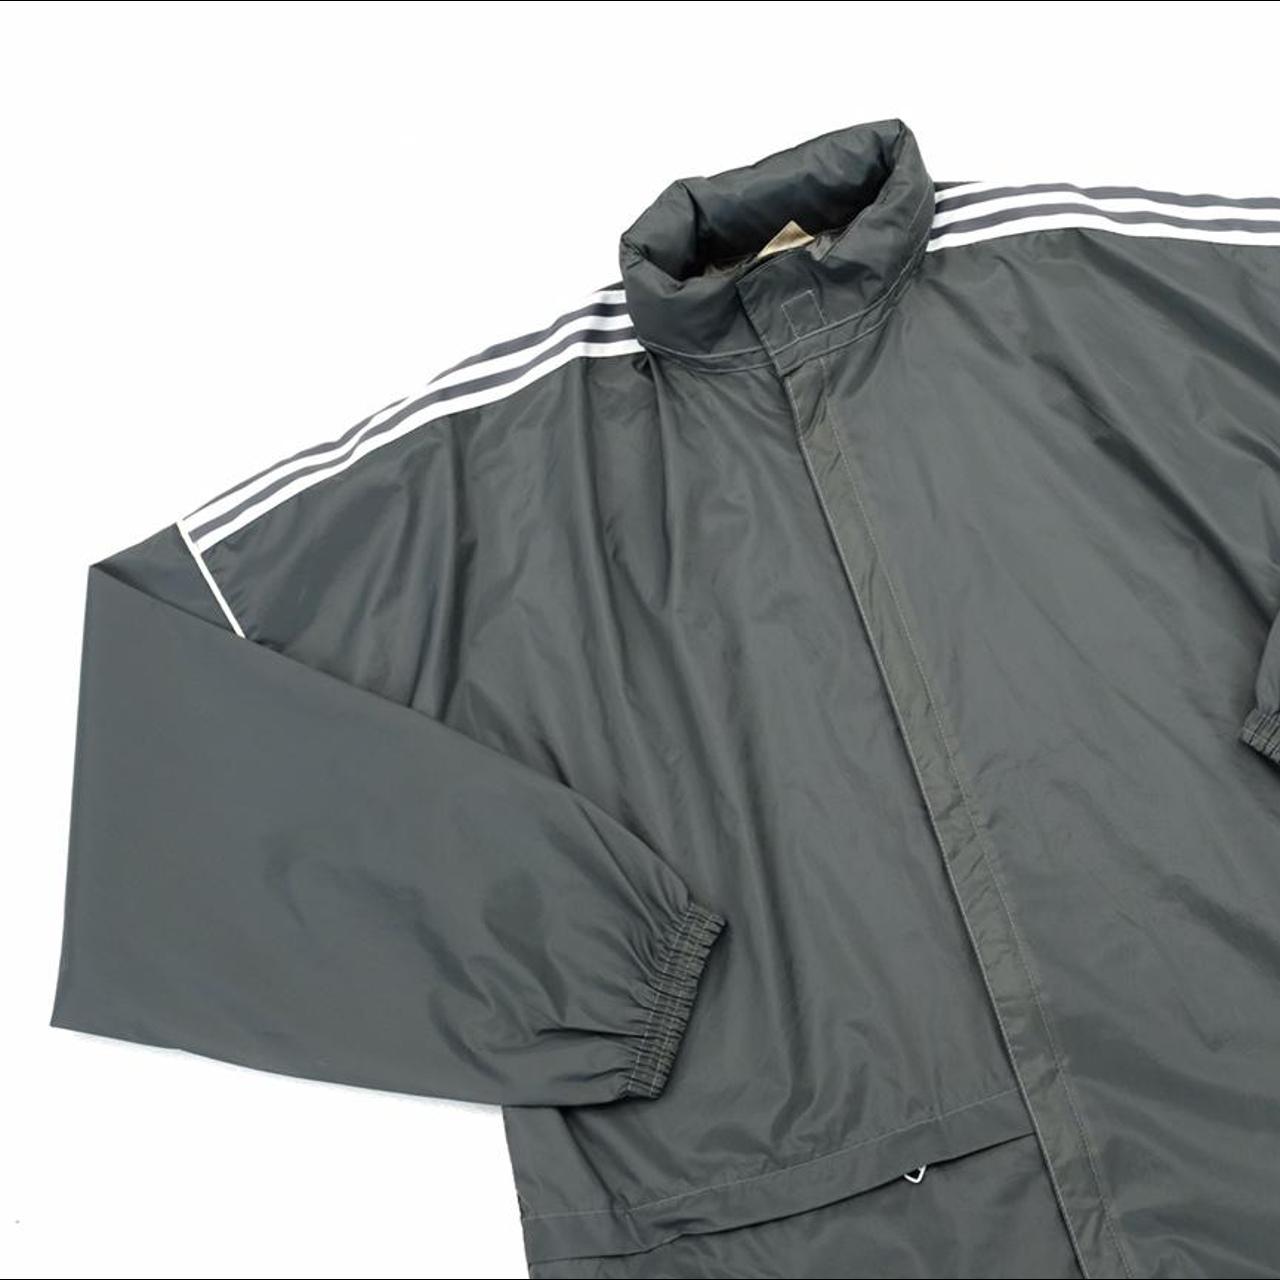 Vintage Adidas jacket. Original 90s Adidas raincoat.... - Depop